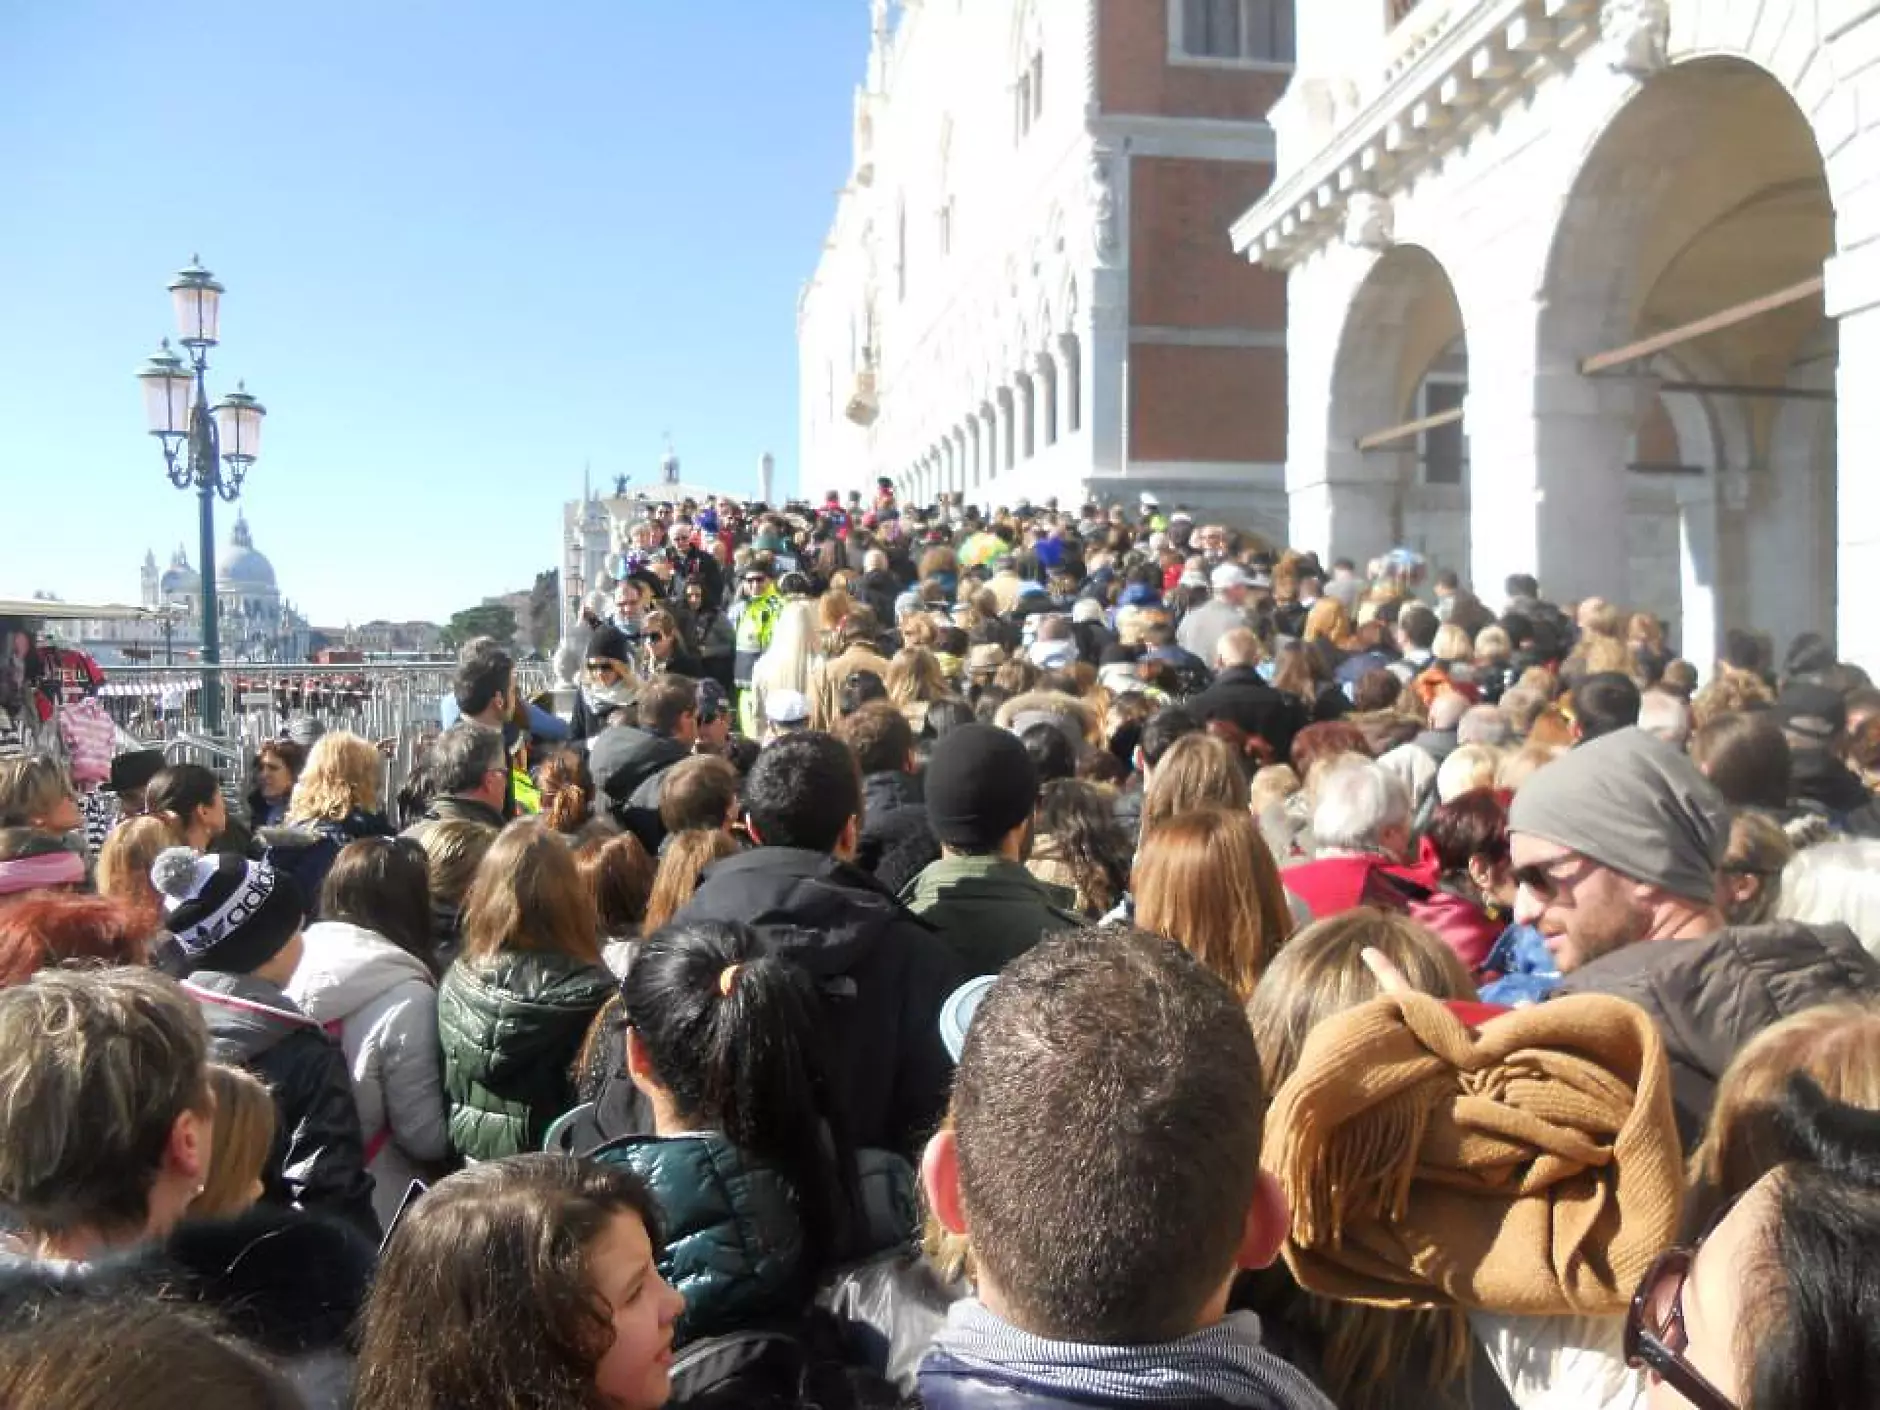 Жителите на Венеция напускат града. Населението падна под 50 000